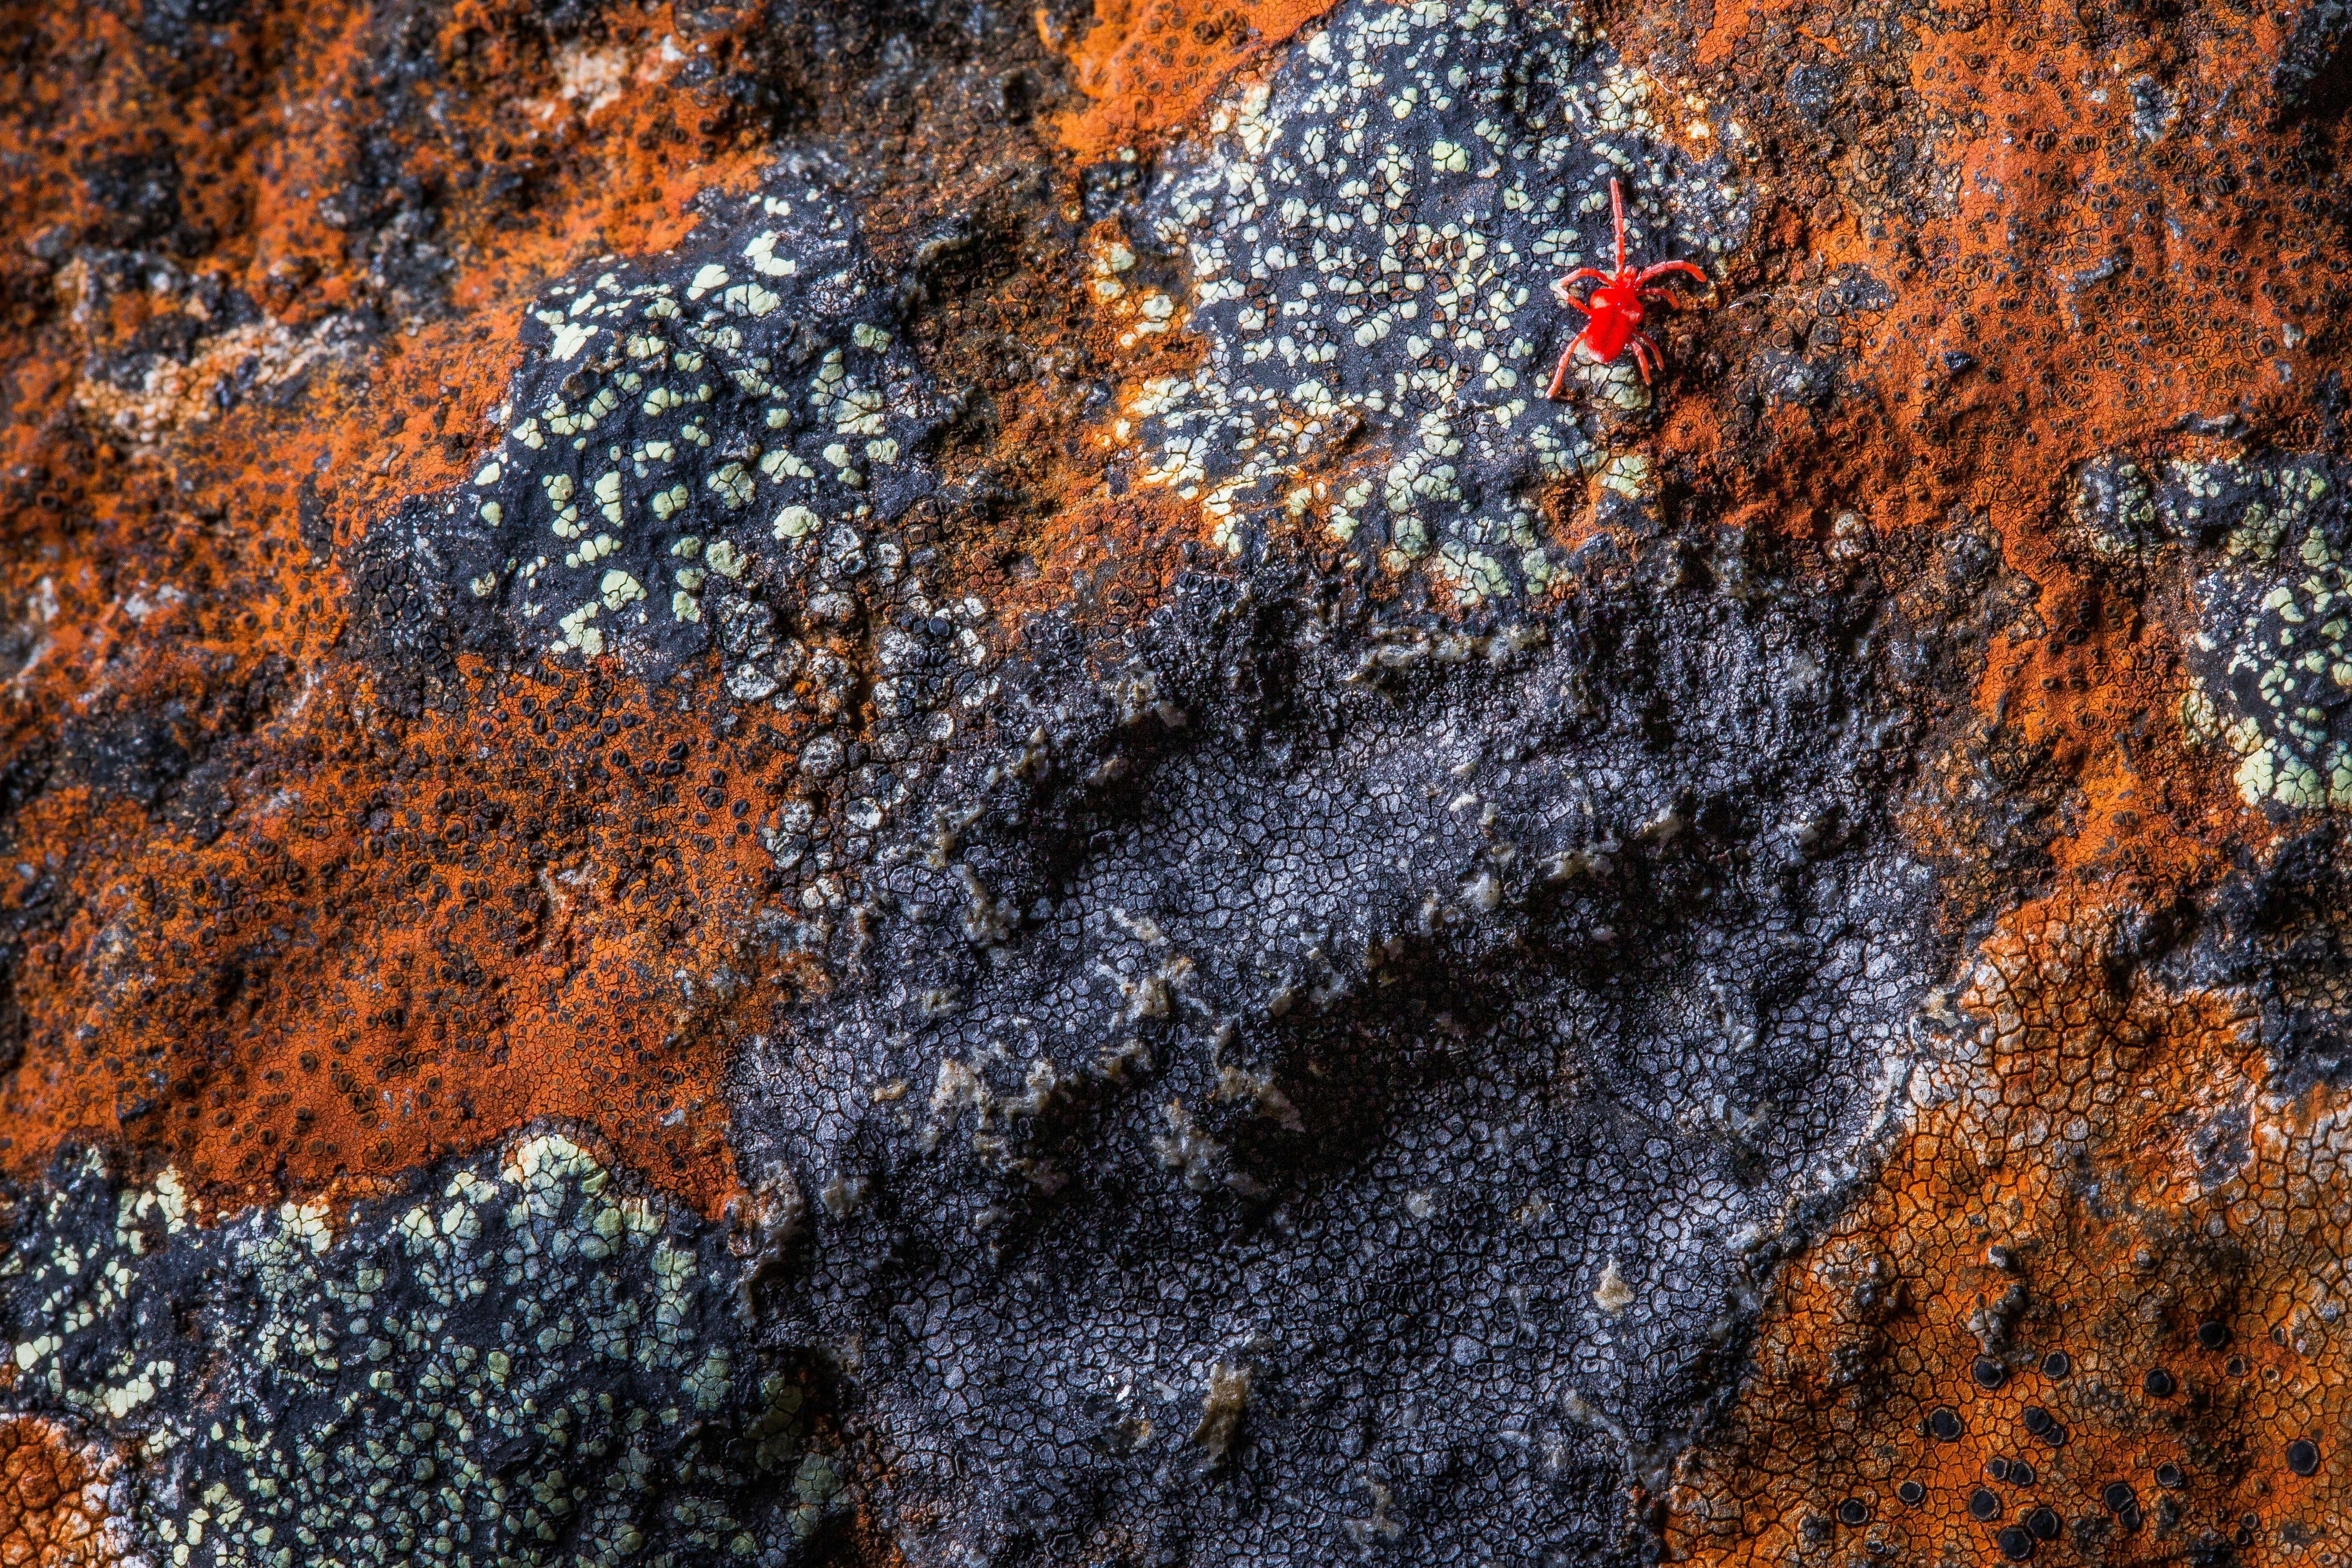 A macro view of a lichen-covered rock in Tasmania, Australia.